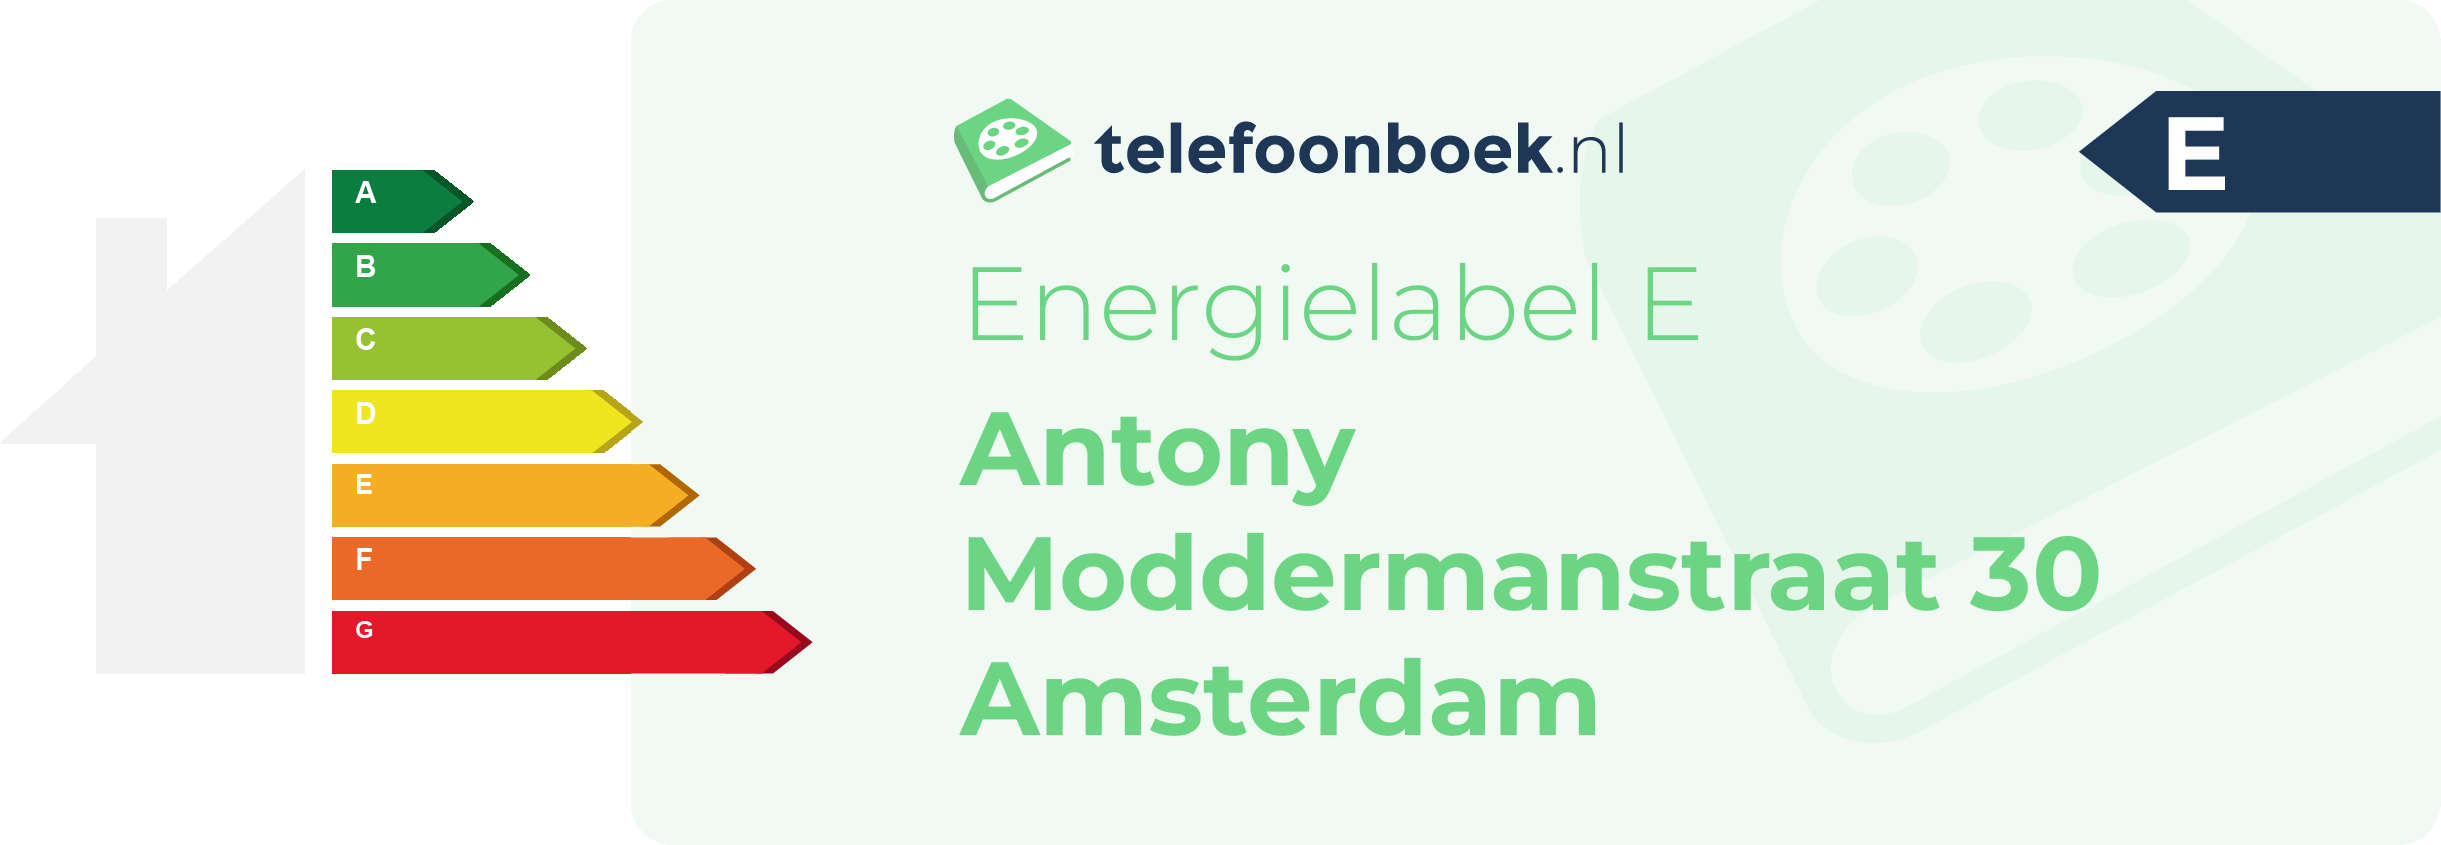 Energielabel Antony Moddermanstraat 30 Amsterdam